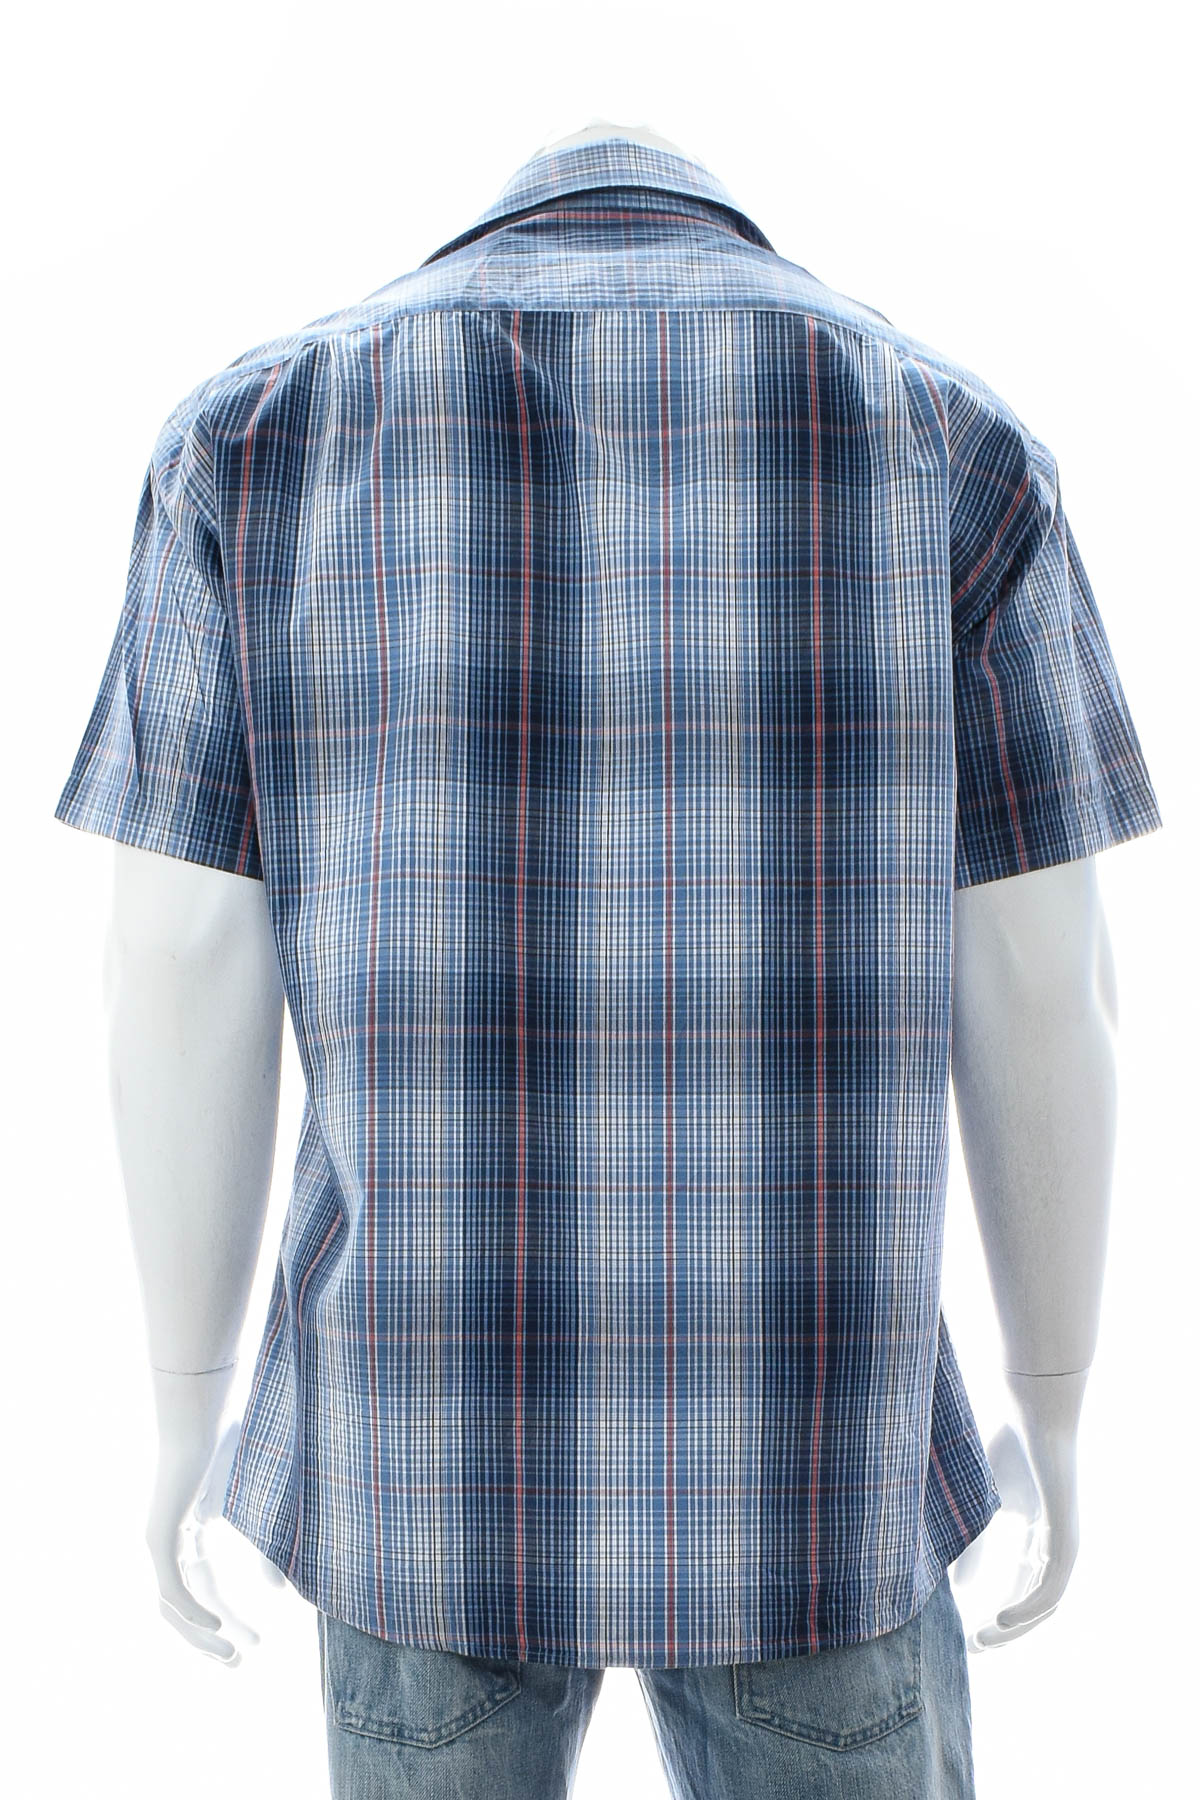 Ανδρικό πουκάμισο - Essentials by Tchibo - 1